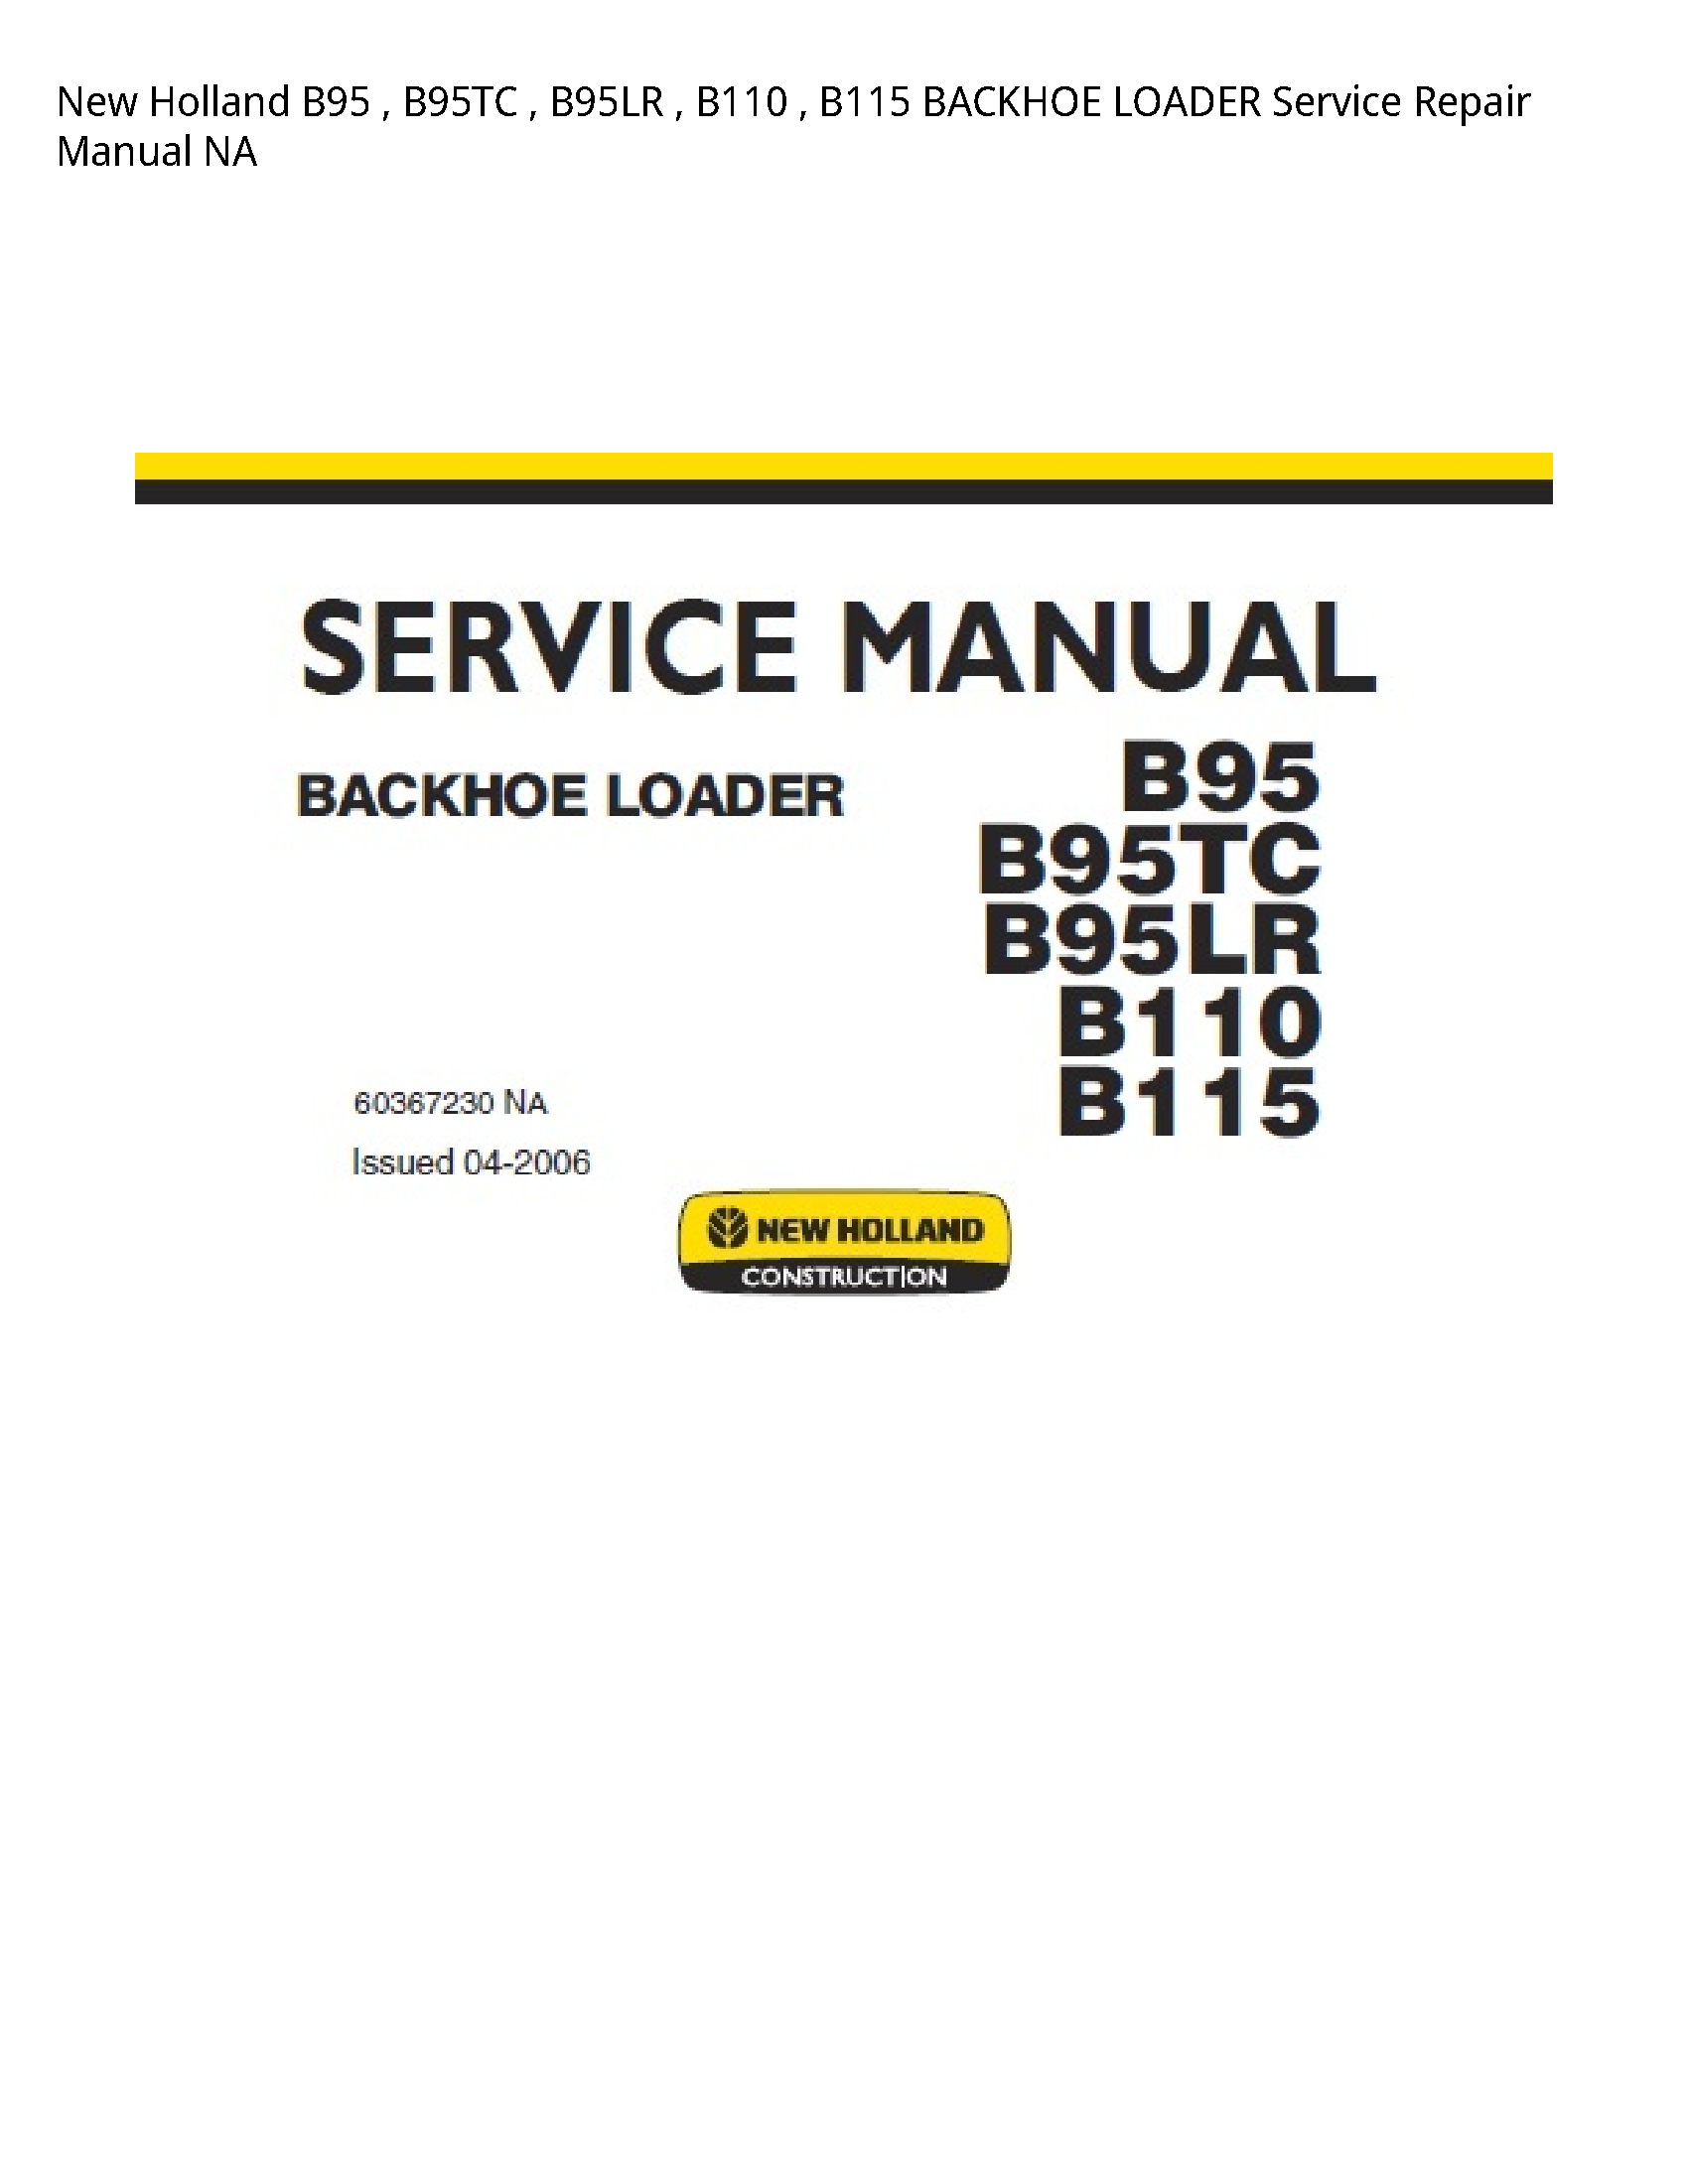 New Holland B95 BACKHOE LOADER manual